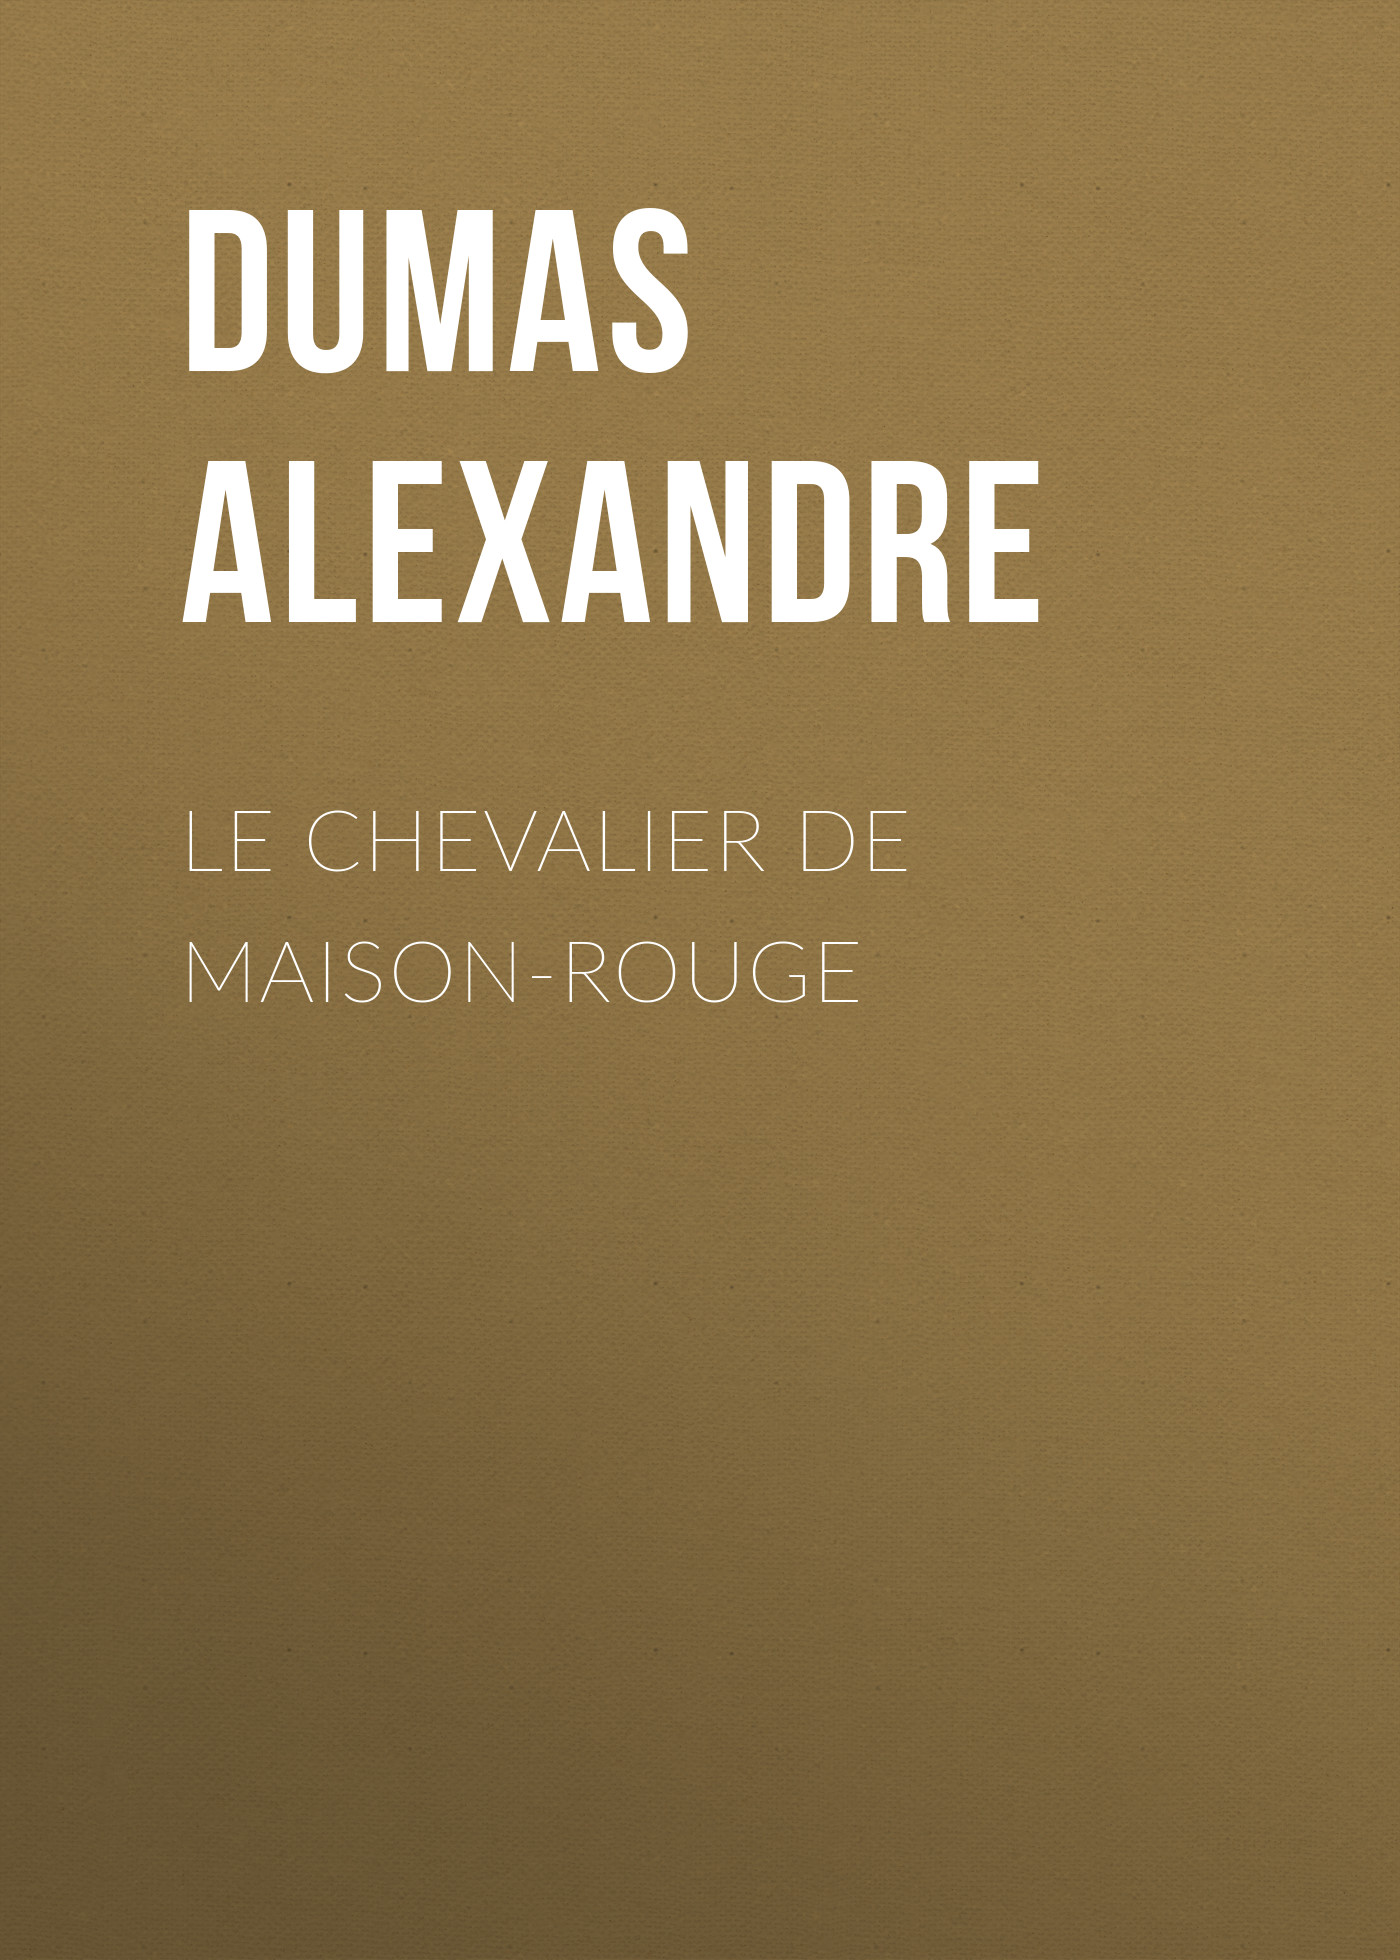 Книга Le Chevalier de Maison-Rouge из серии , созданная Alexandre Dumas, может относится к жанру Литература 19 века, Зарубежная старинная литература, Зарубежная классика. Стоимость электронной книги Le Chevalier de Maison-Rouge с идентификатором 25201791 составляет 0 руб.